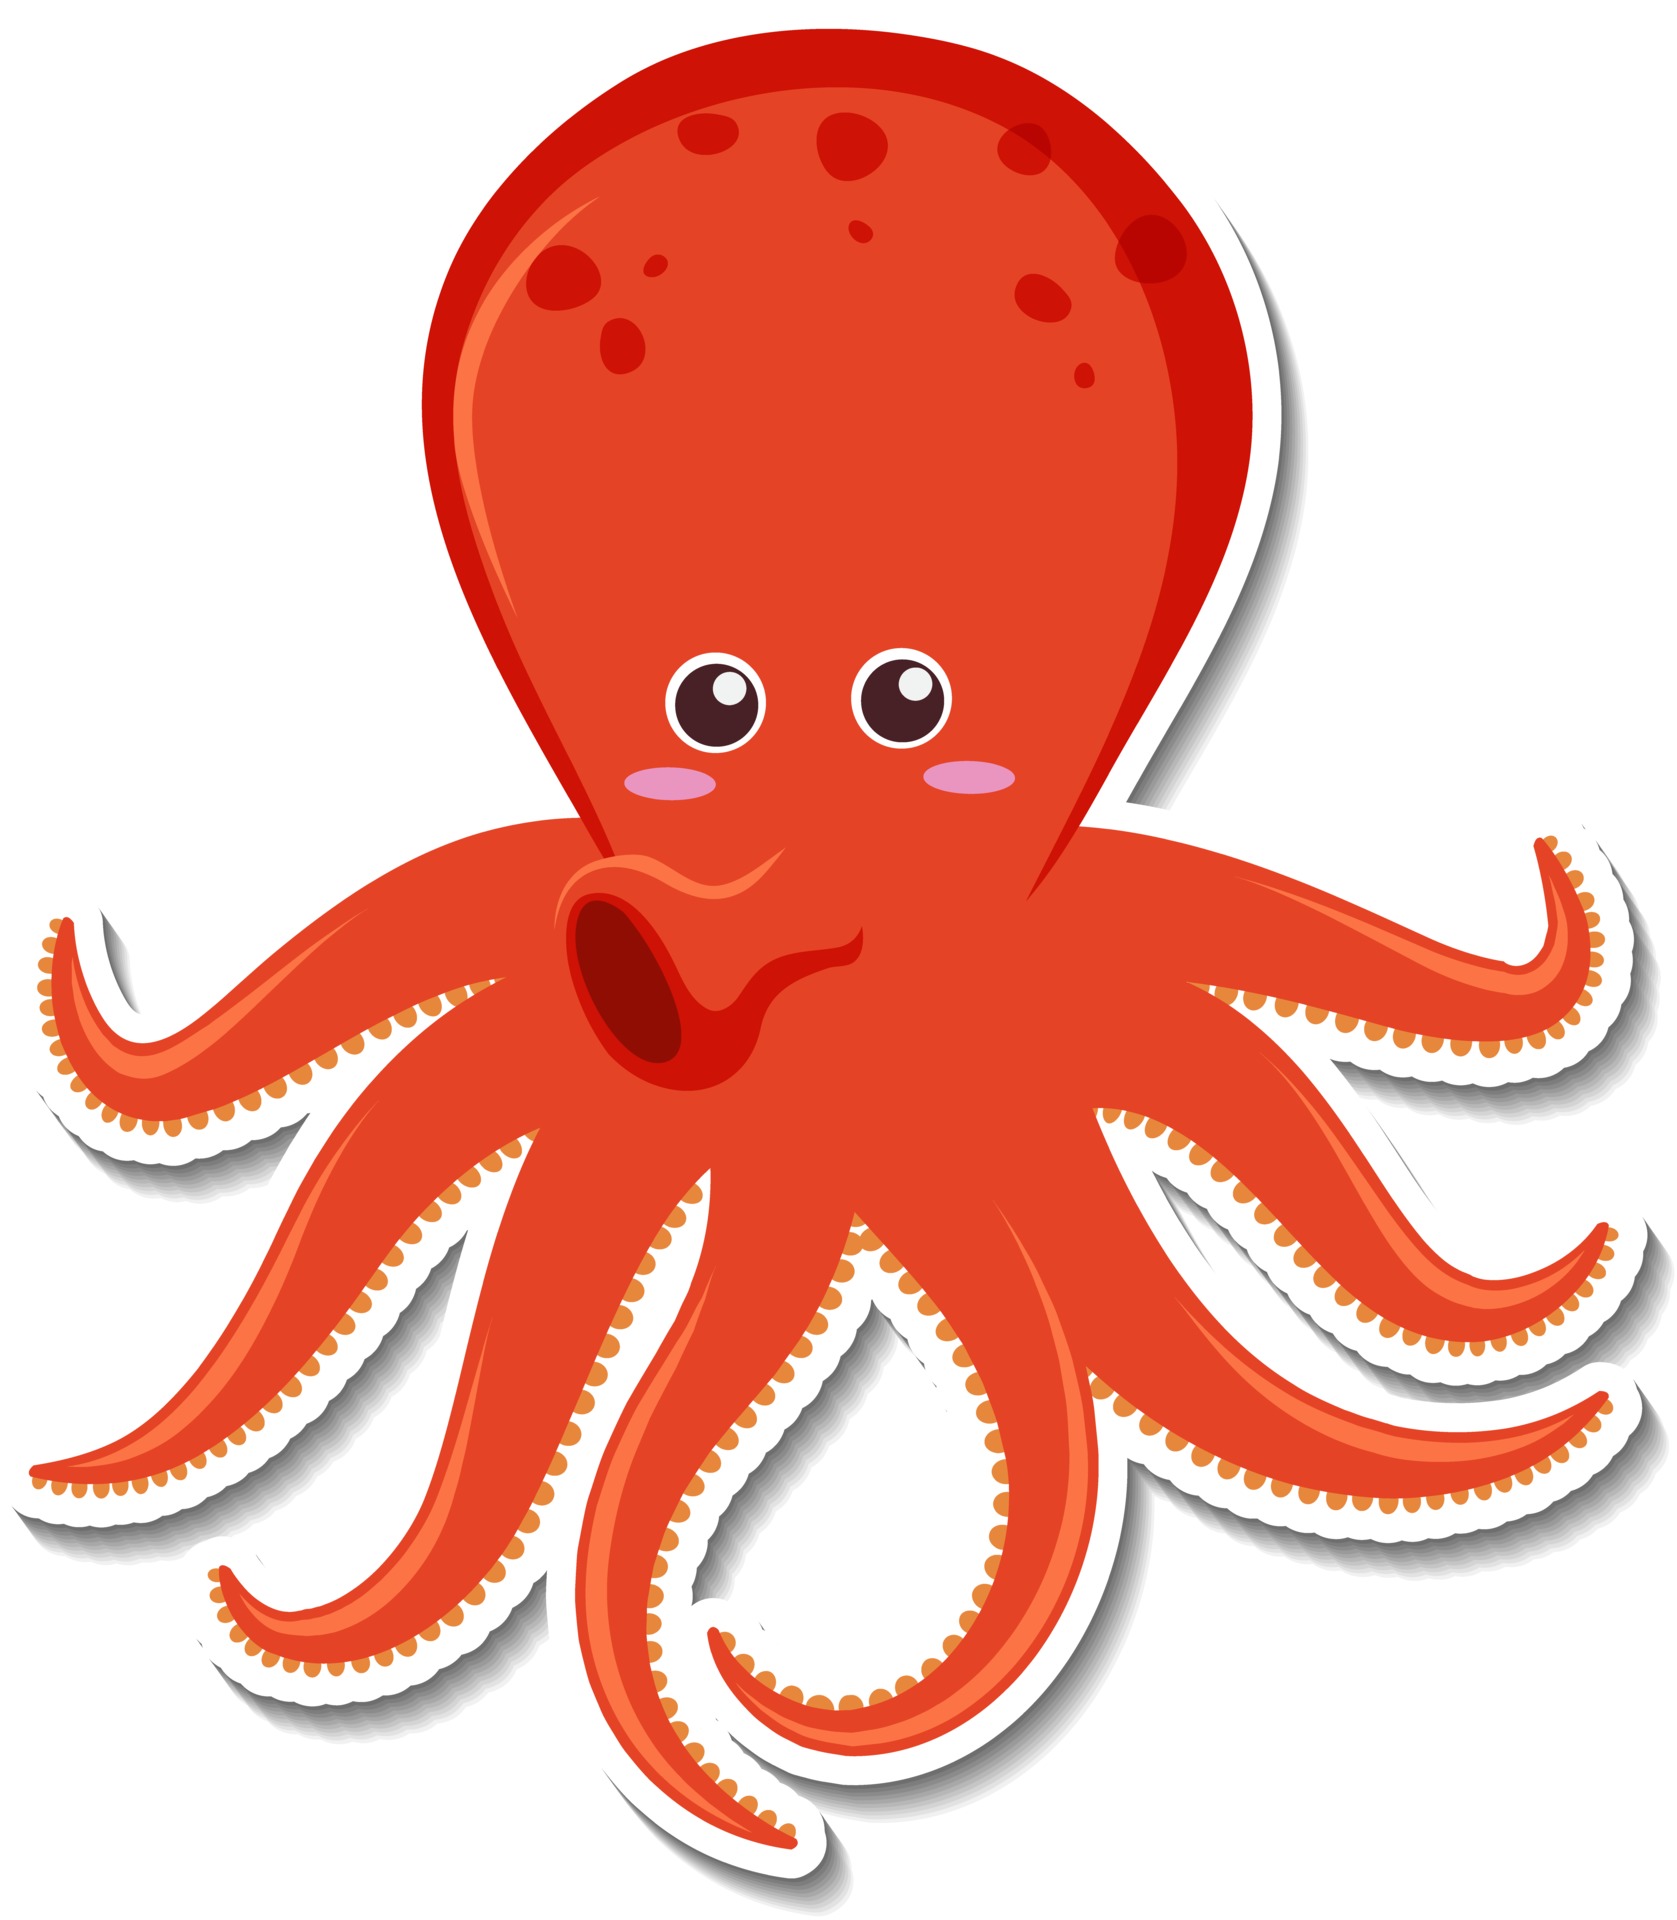 Cute octopus cartoon character sticker 2852708 Vector Art at Vecteezy